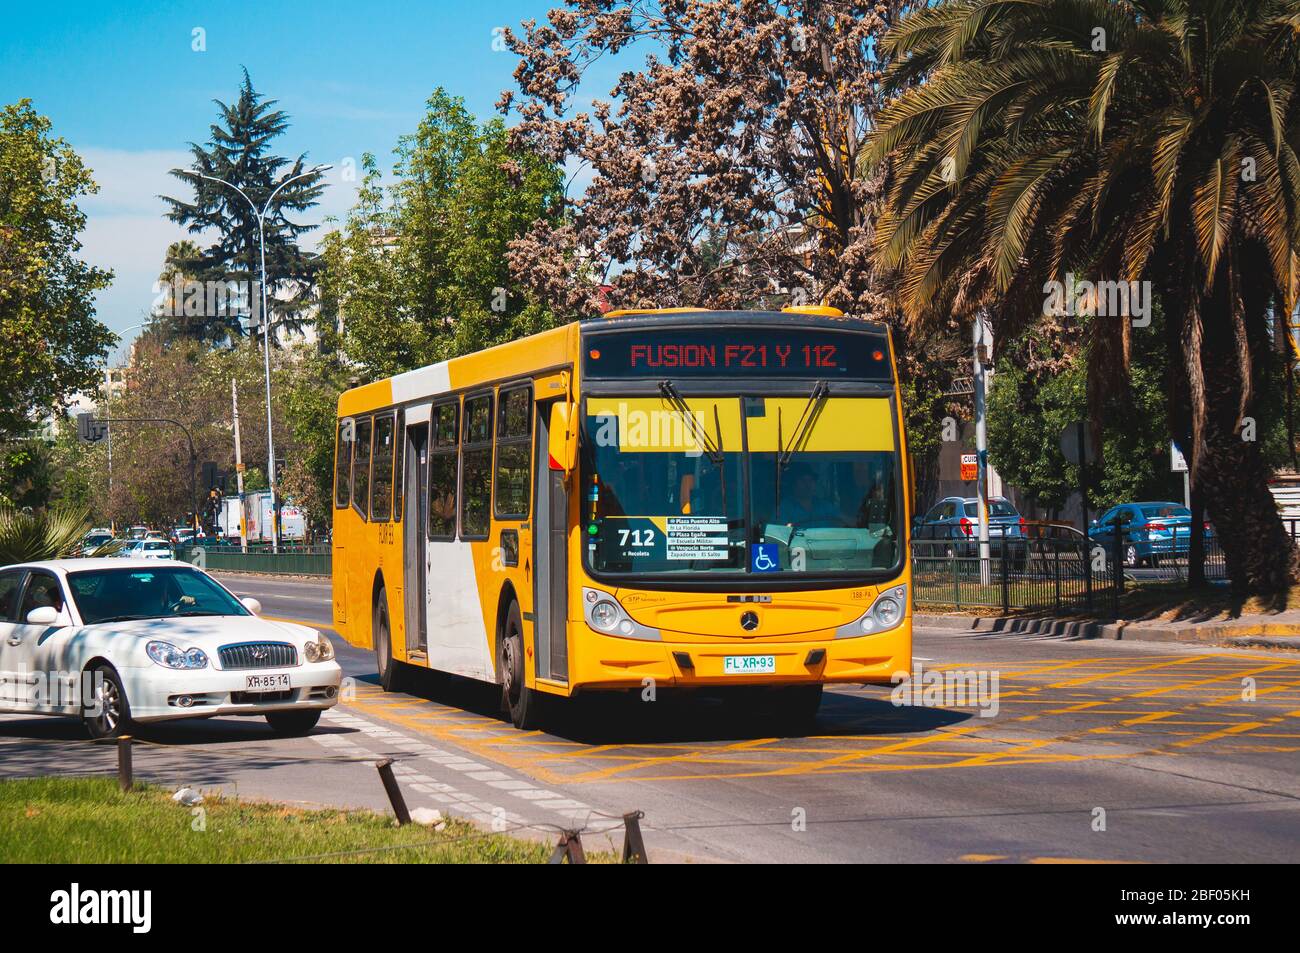 SANTIAGO, CHILE - SEPTEMBER 2016: A Transantiago bus Stock Photo